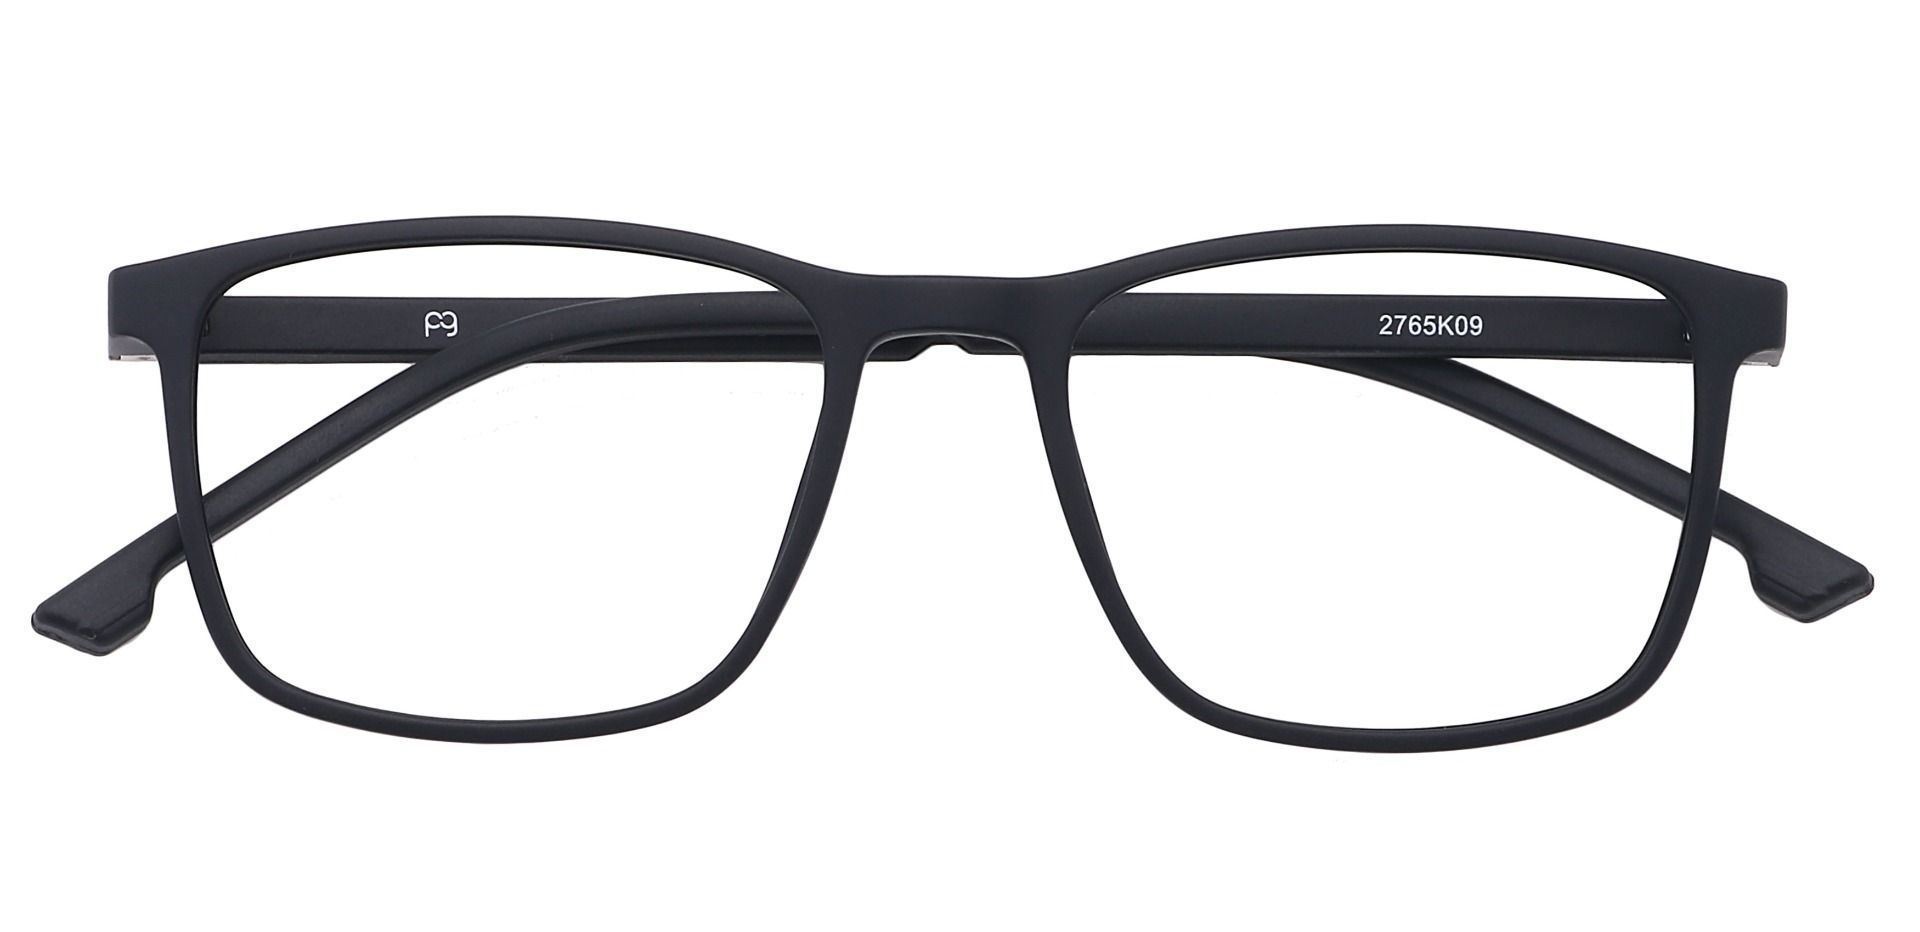 Franklin Rectangle Lined Bifocal Glasses -   Matte Black  